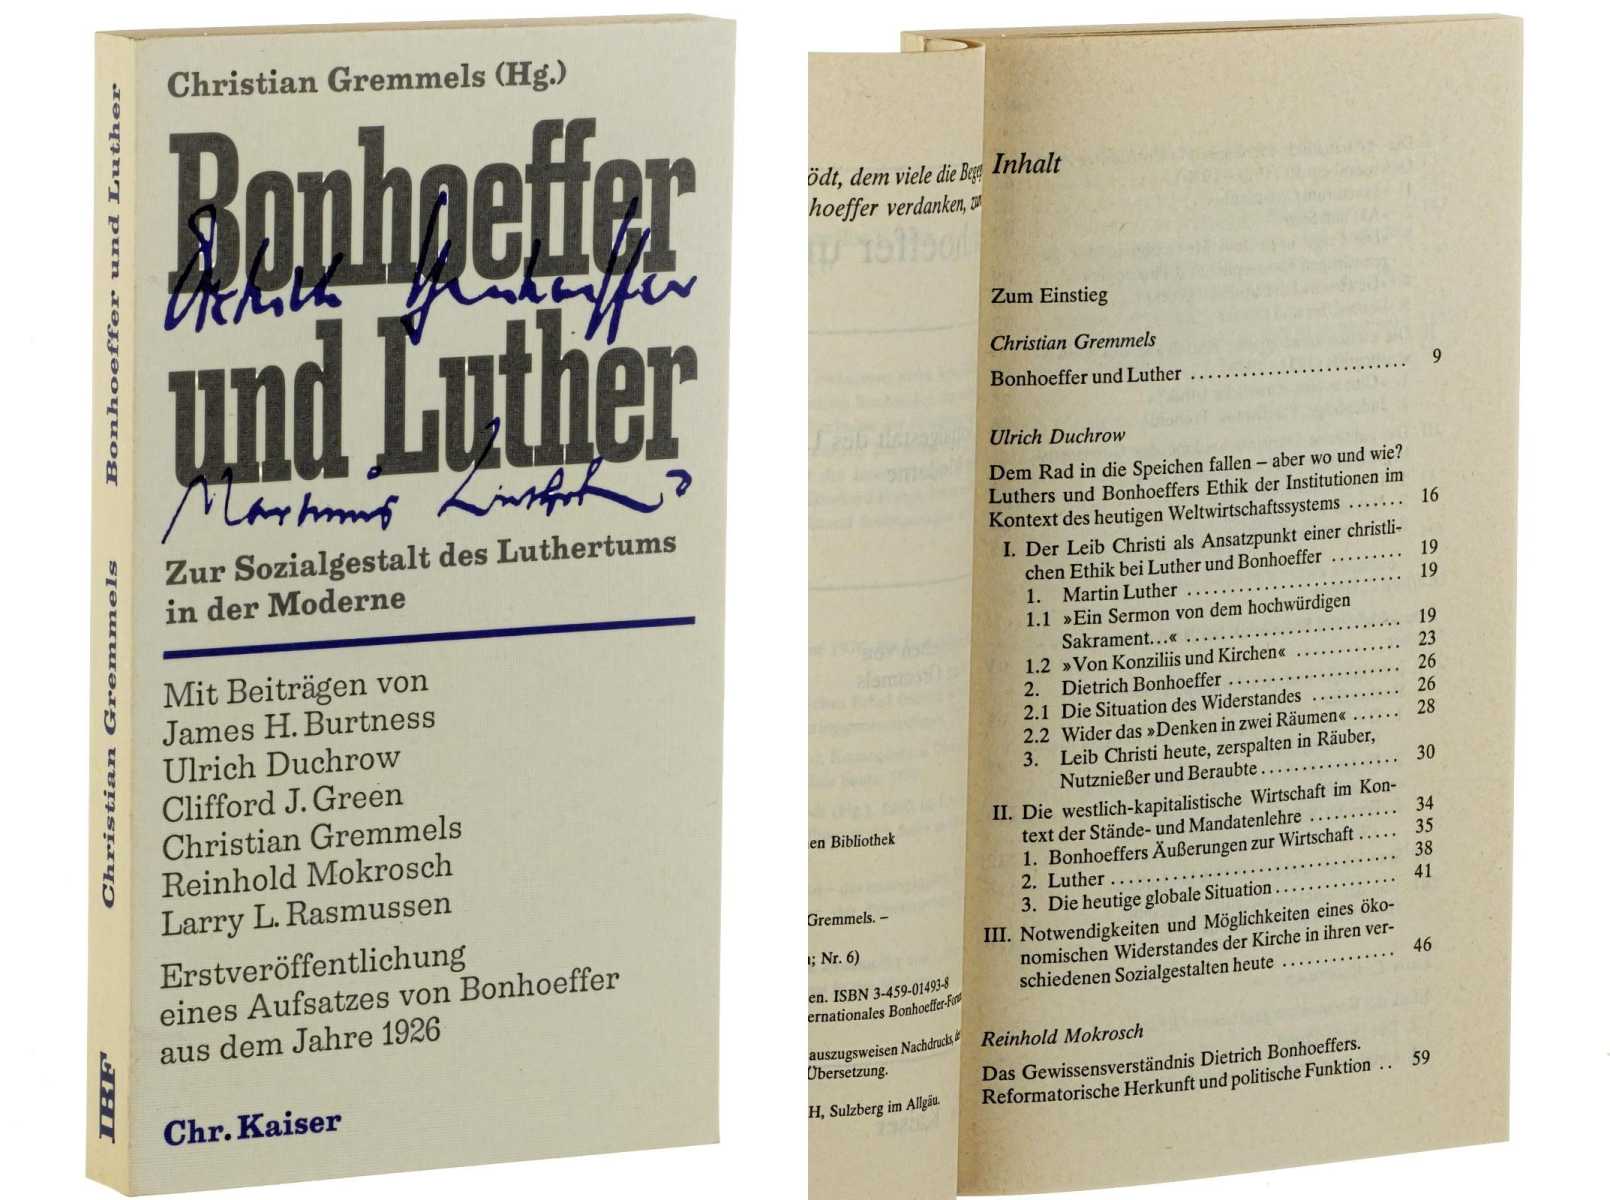 Gremmels, Christian (Hg.):  Bonhoeffer und Luther. Zur Sozialgestalt des Luthertums in der Moderne. 